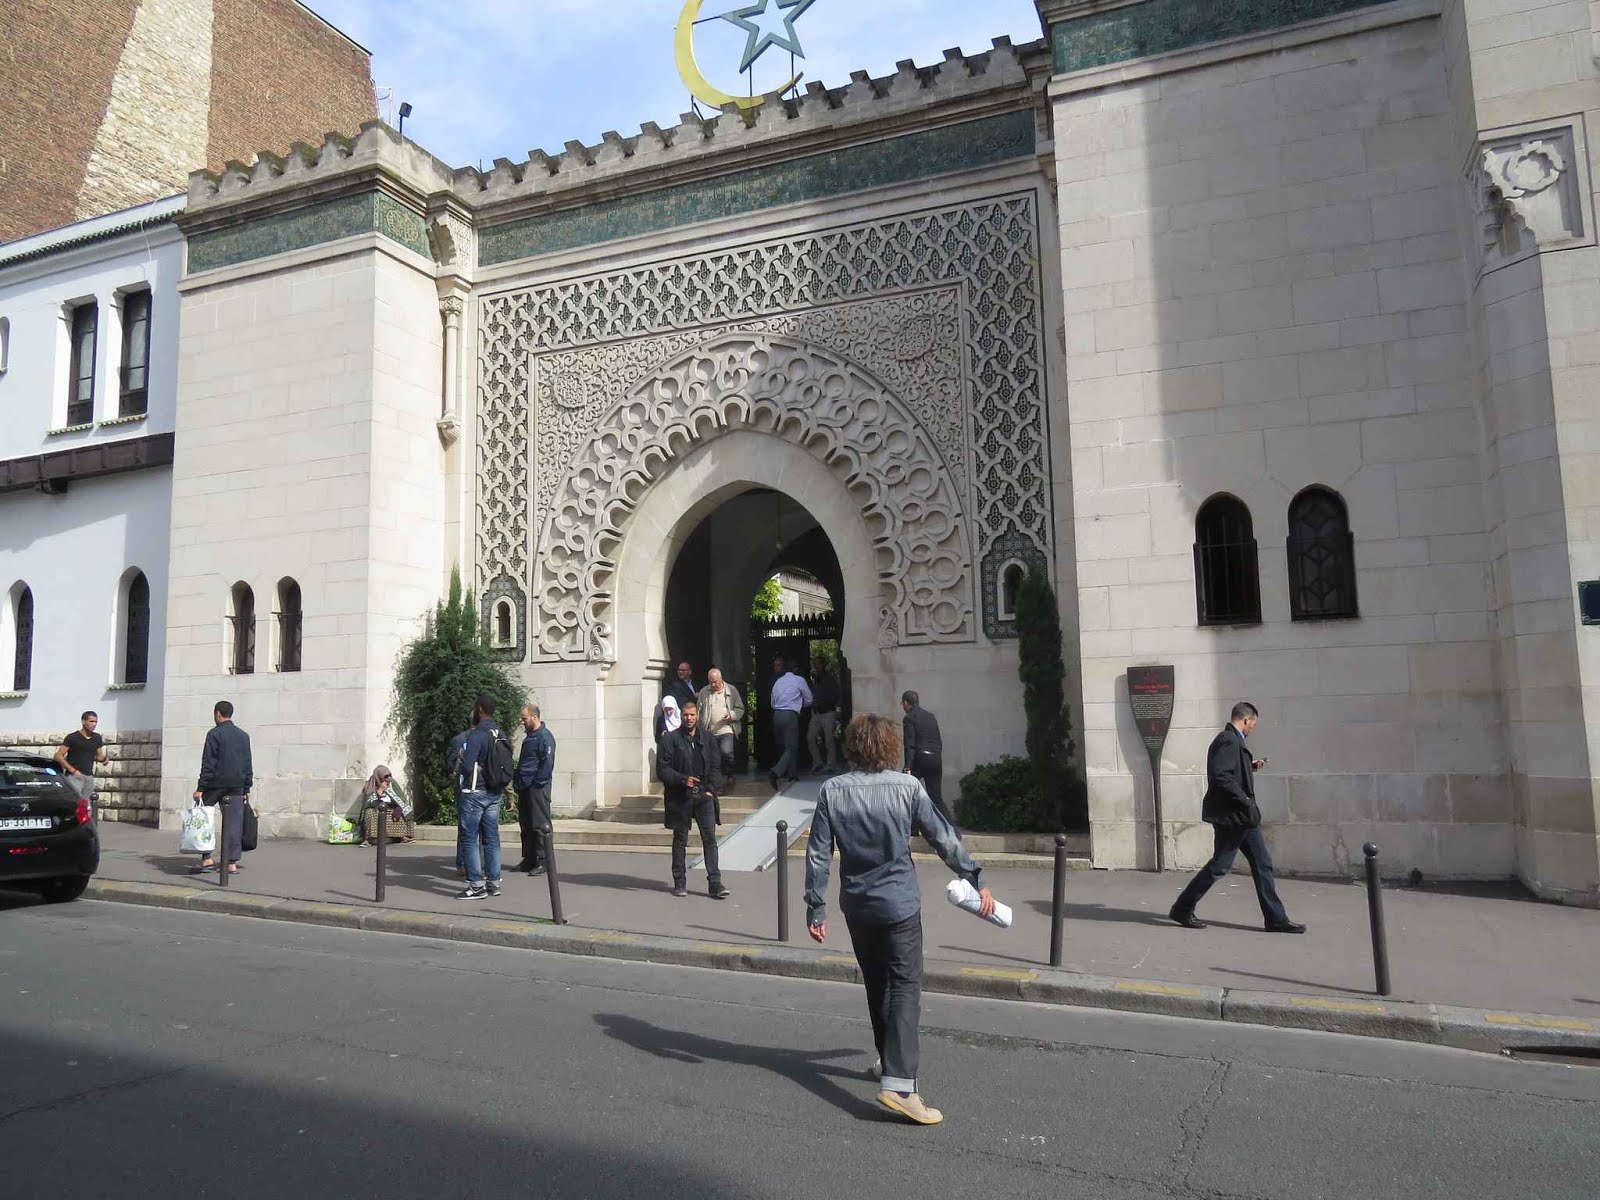 La premiére mosquée de France